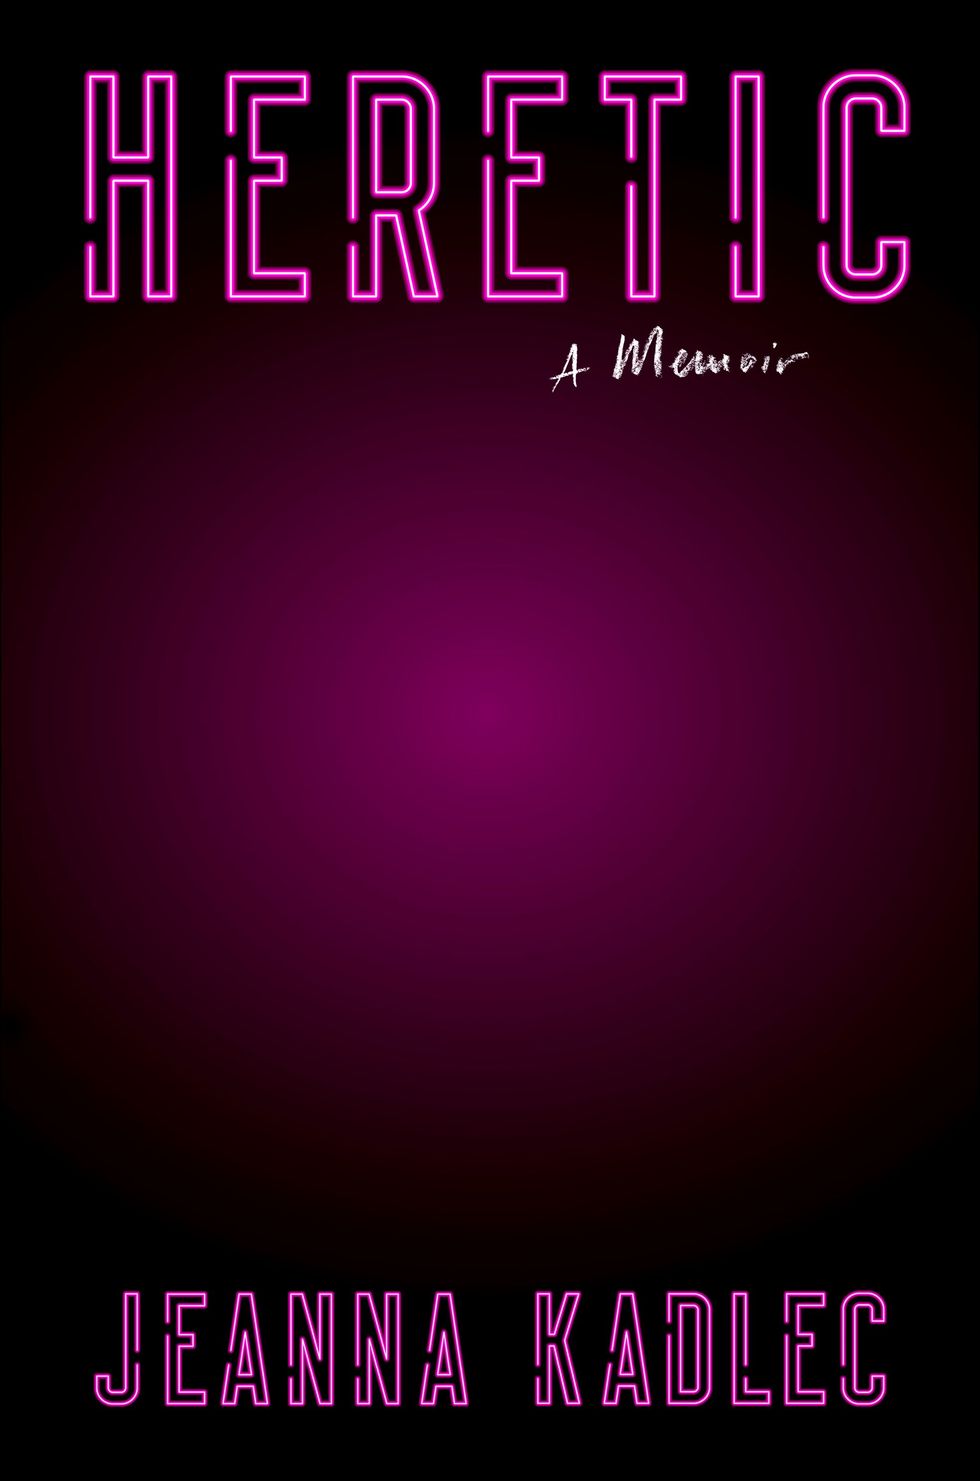 Heretic: A Memoir